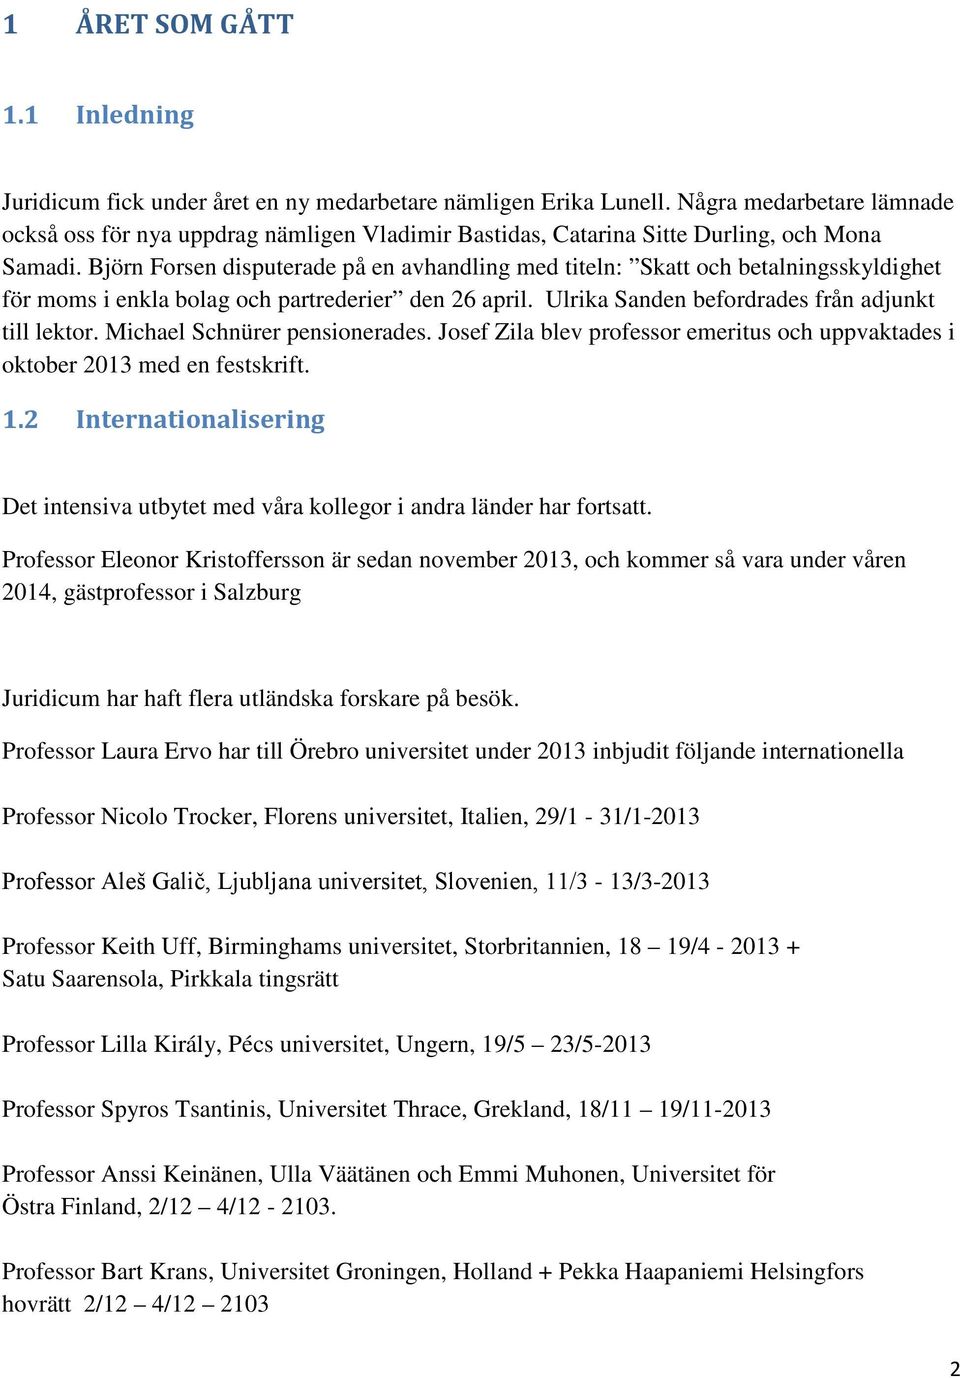 Björn Forsen disputerade på en avhandling med titeln: Skatt och betalningsskyldighet för moms i enkla bolag och partrederier den 26 april. Ulrika Sanden befordrades från adjunkt till lektor.